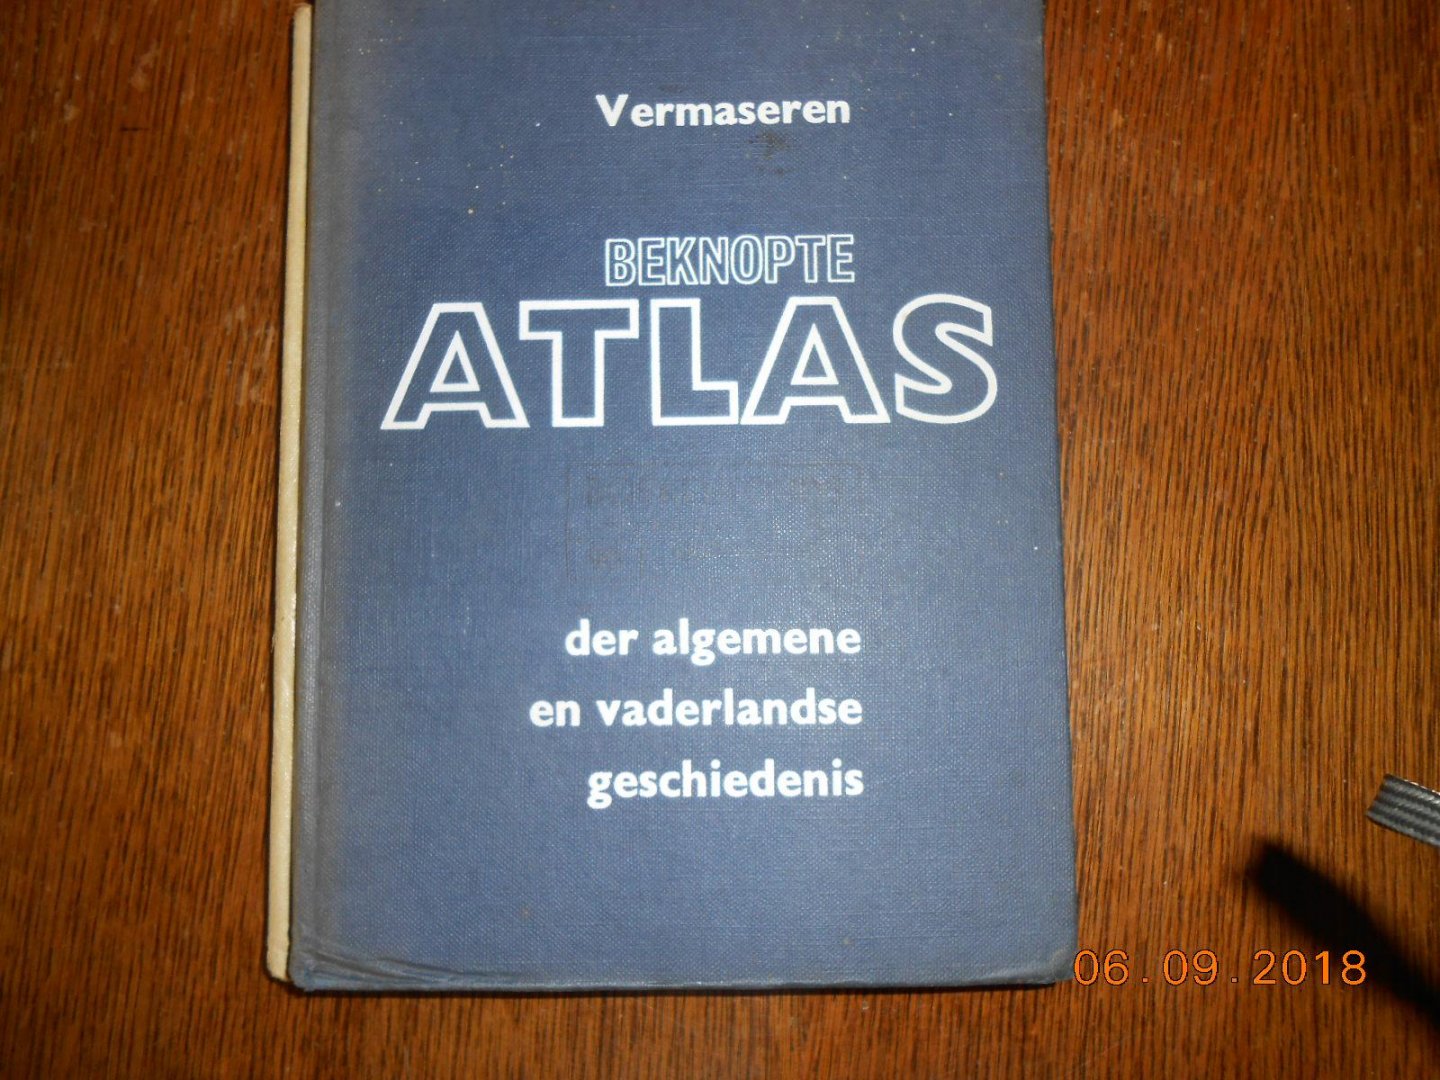 Vermaseren - Beknopte atlas der algemene vaderlandse geschiedenis